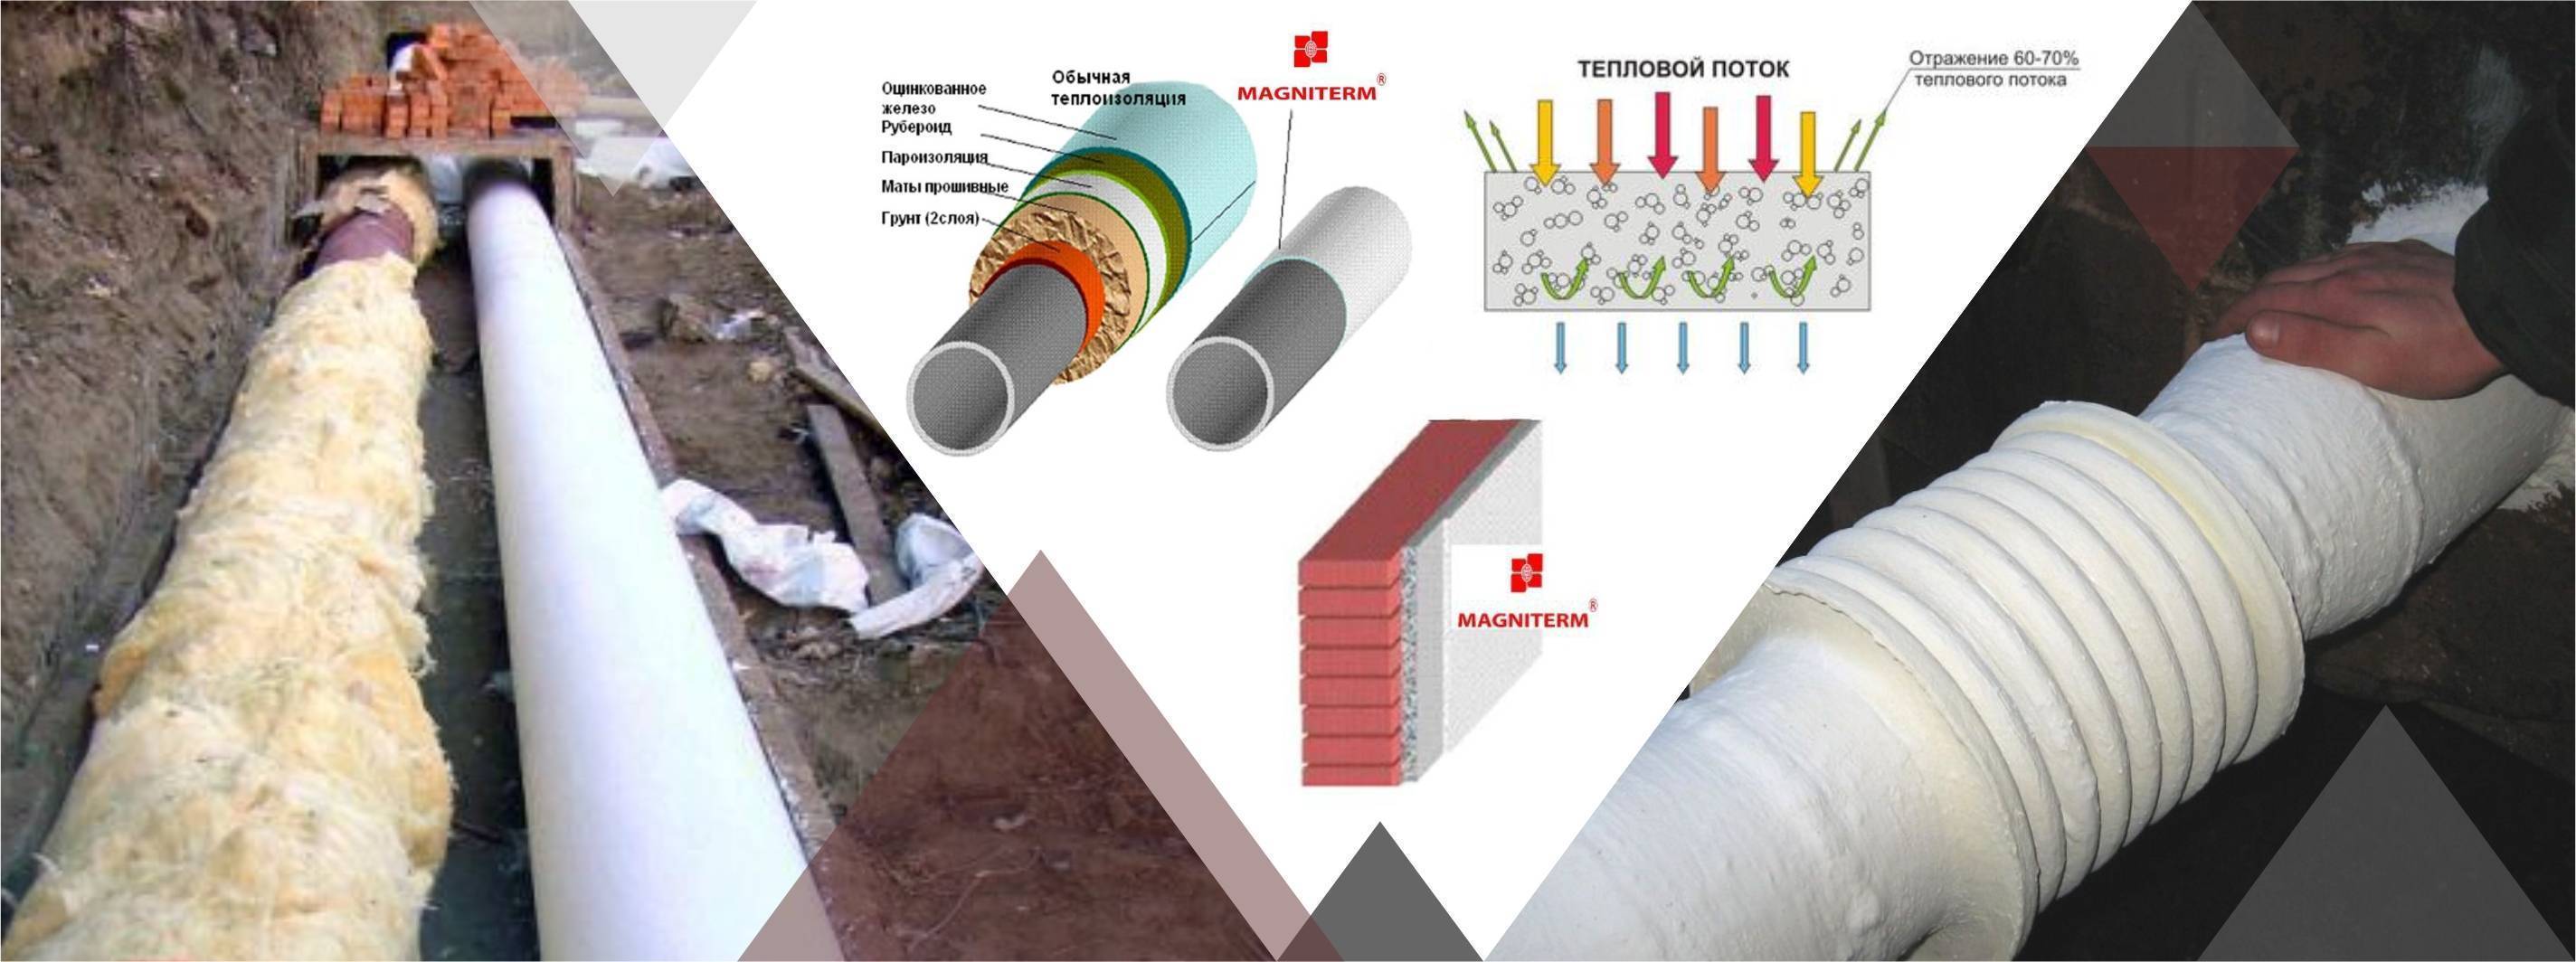 Изоляция трубопроводов: разновидности изоляторов для разных типов труб